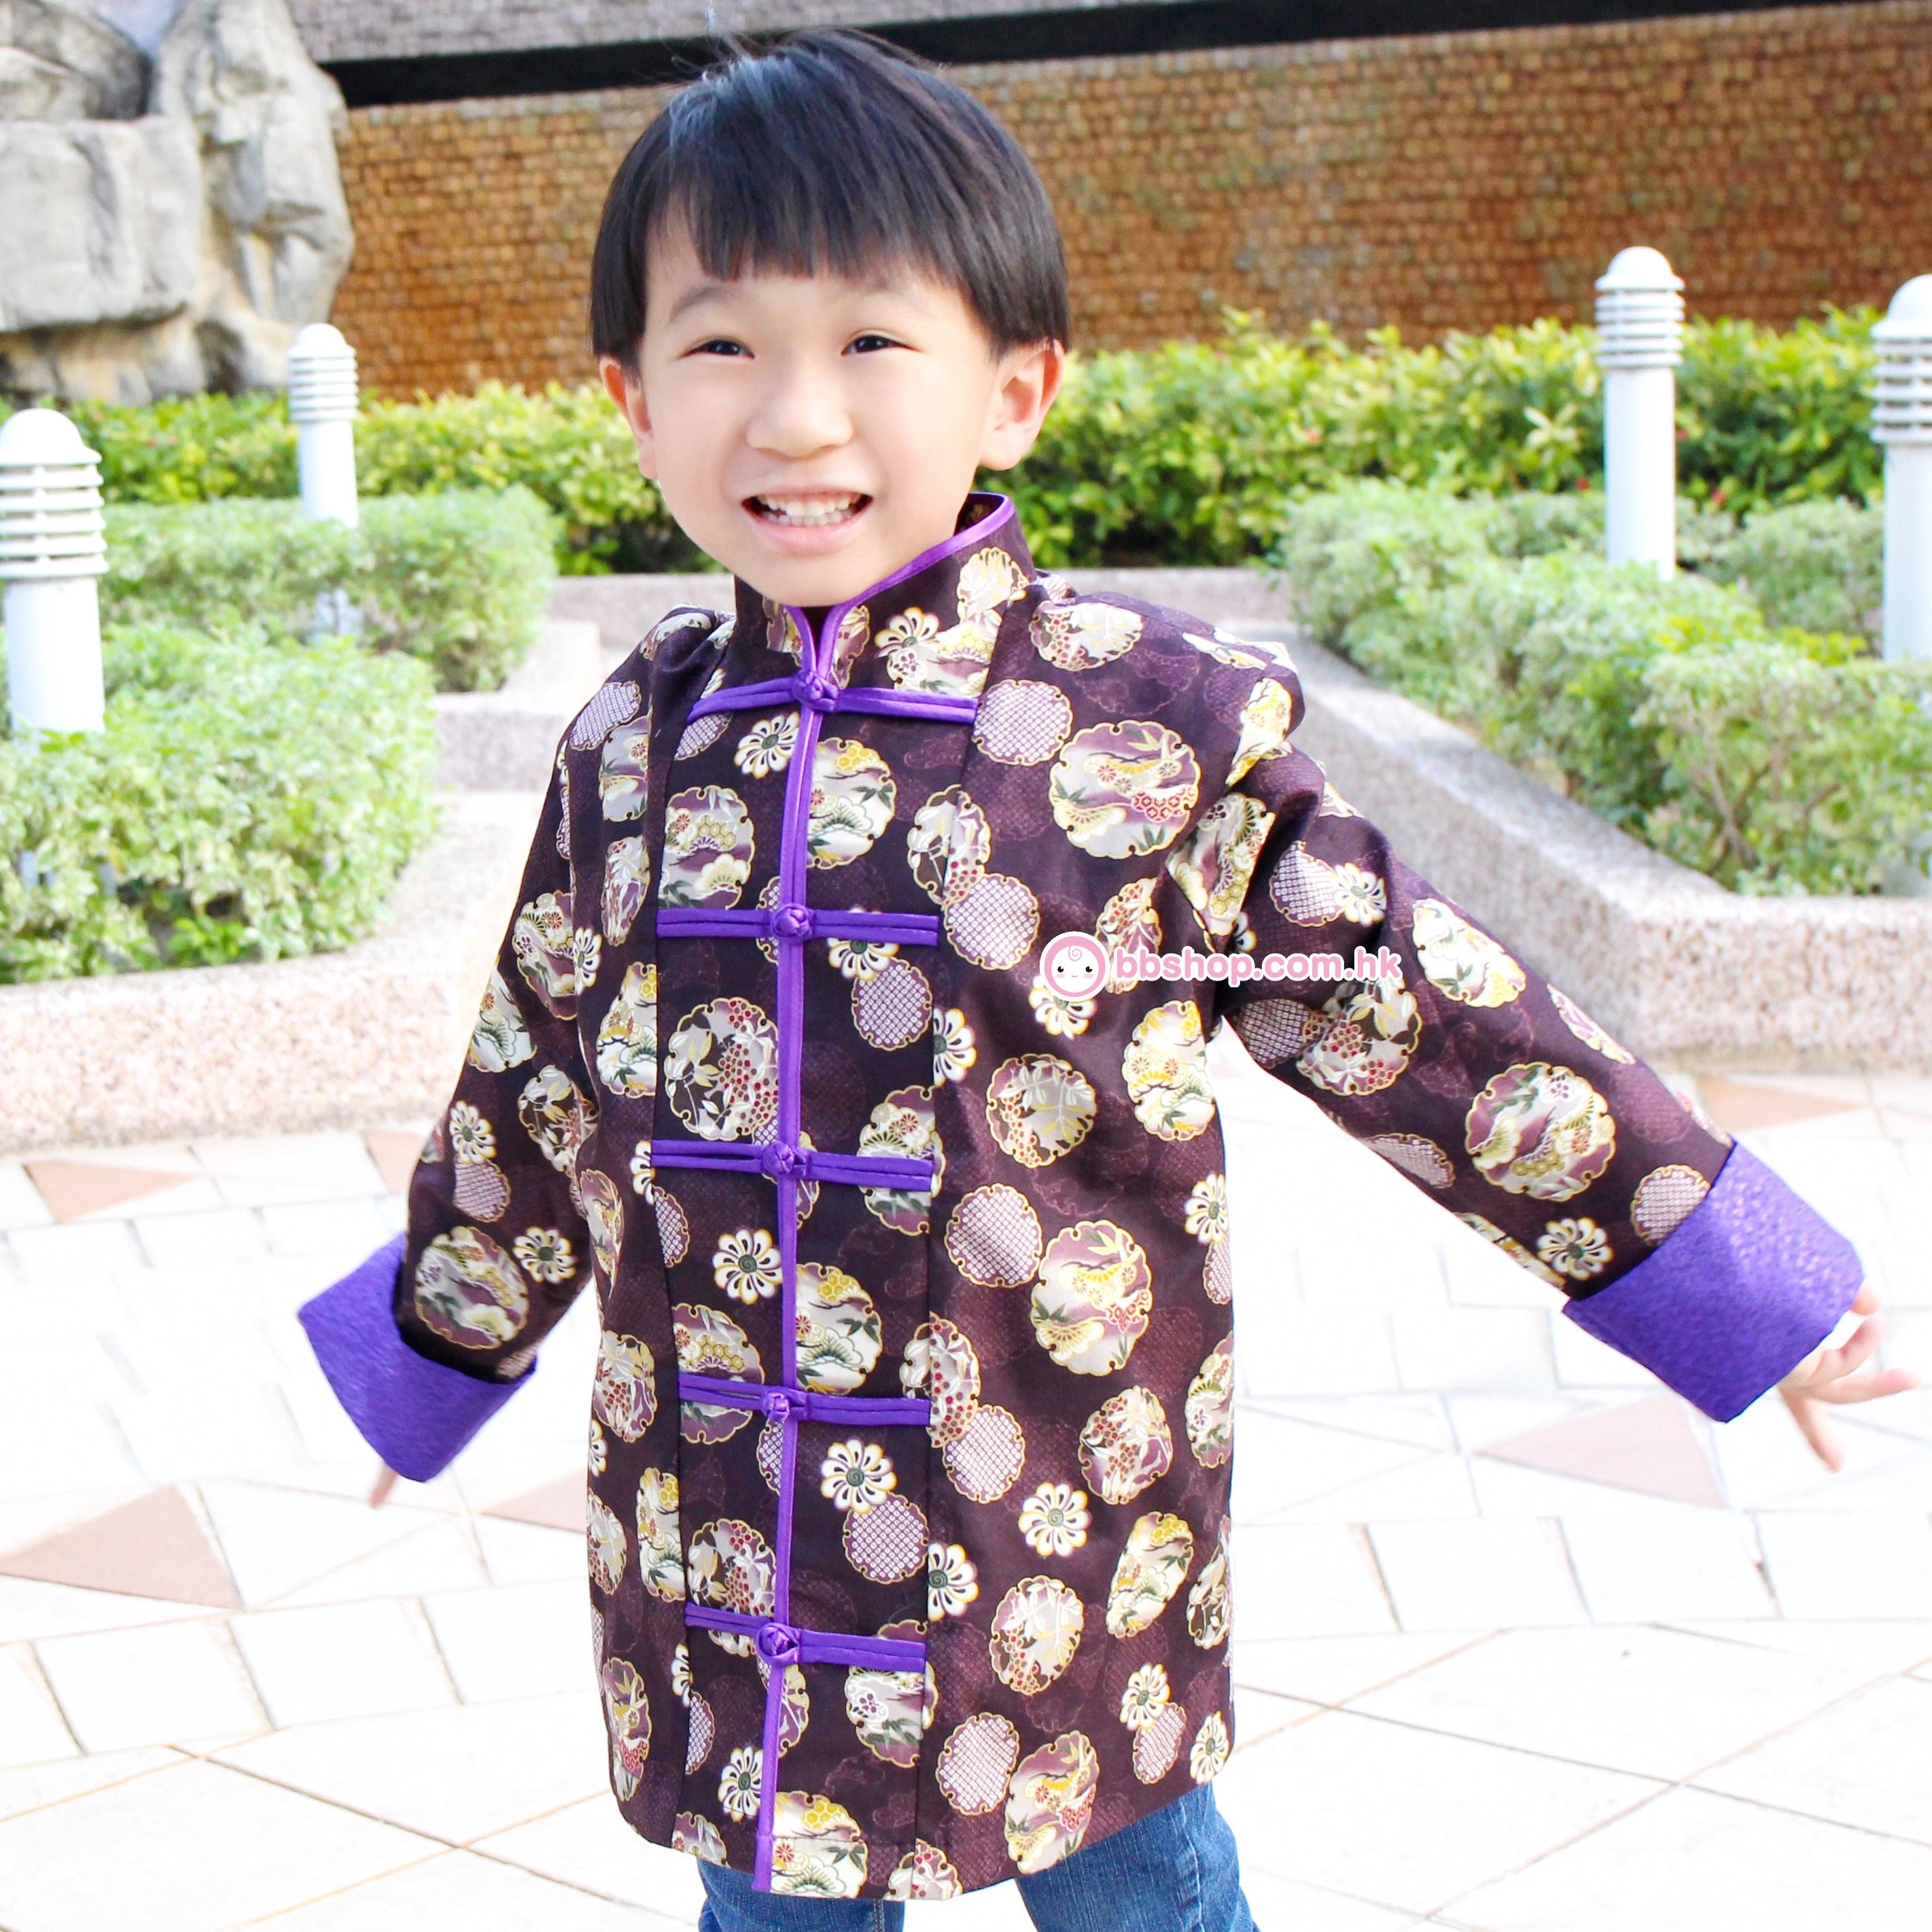 HMC252 日本燙金布料深紫色和花球男童中國服